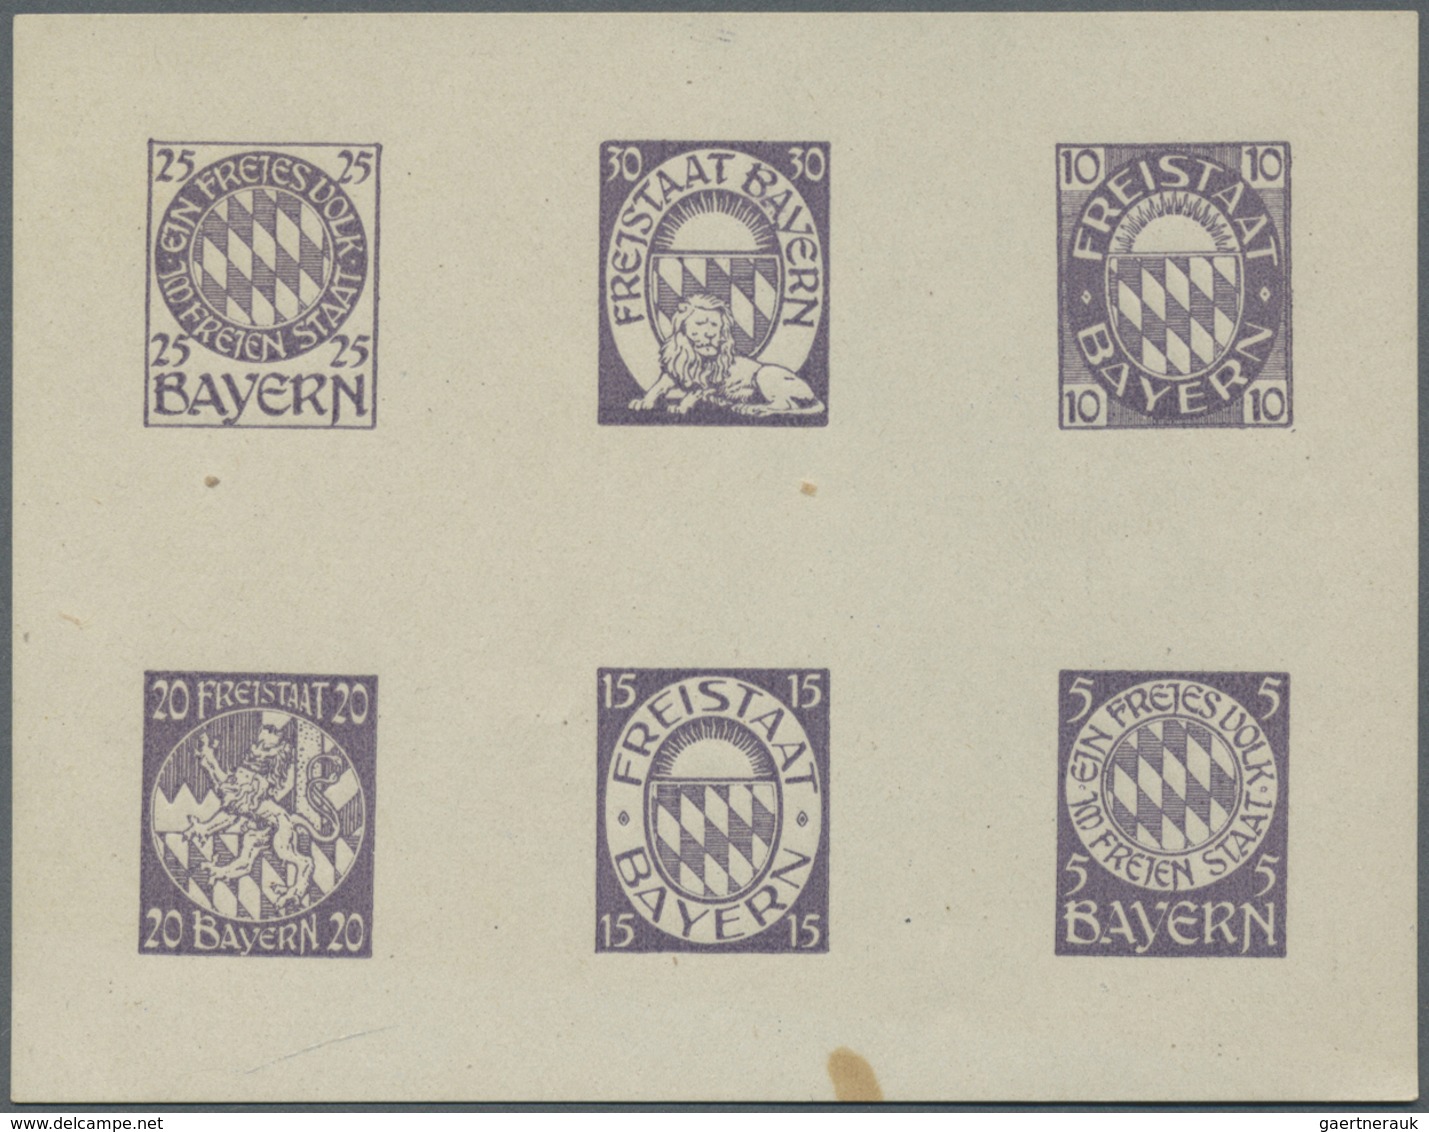 * Bayern - Marken und Briefe: 1919. 1919, Entwürfe des Nürnberger Künstlers Franz Adler für eine neue